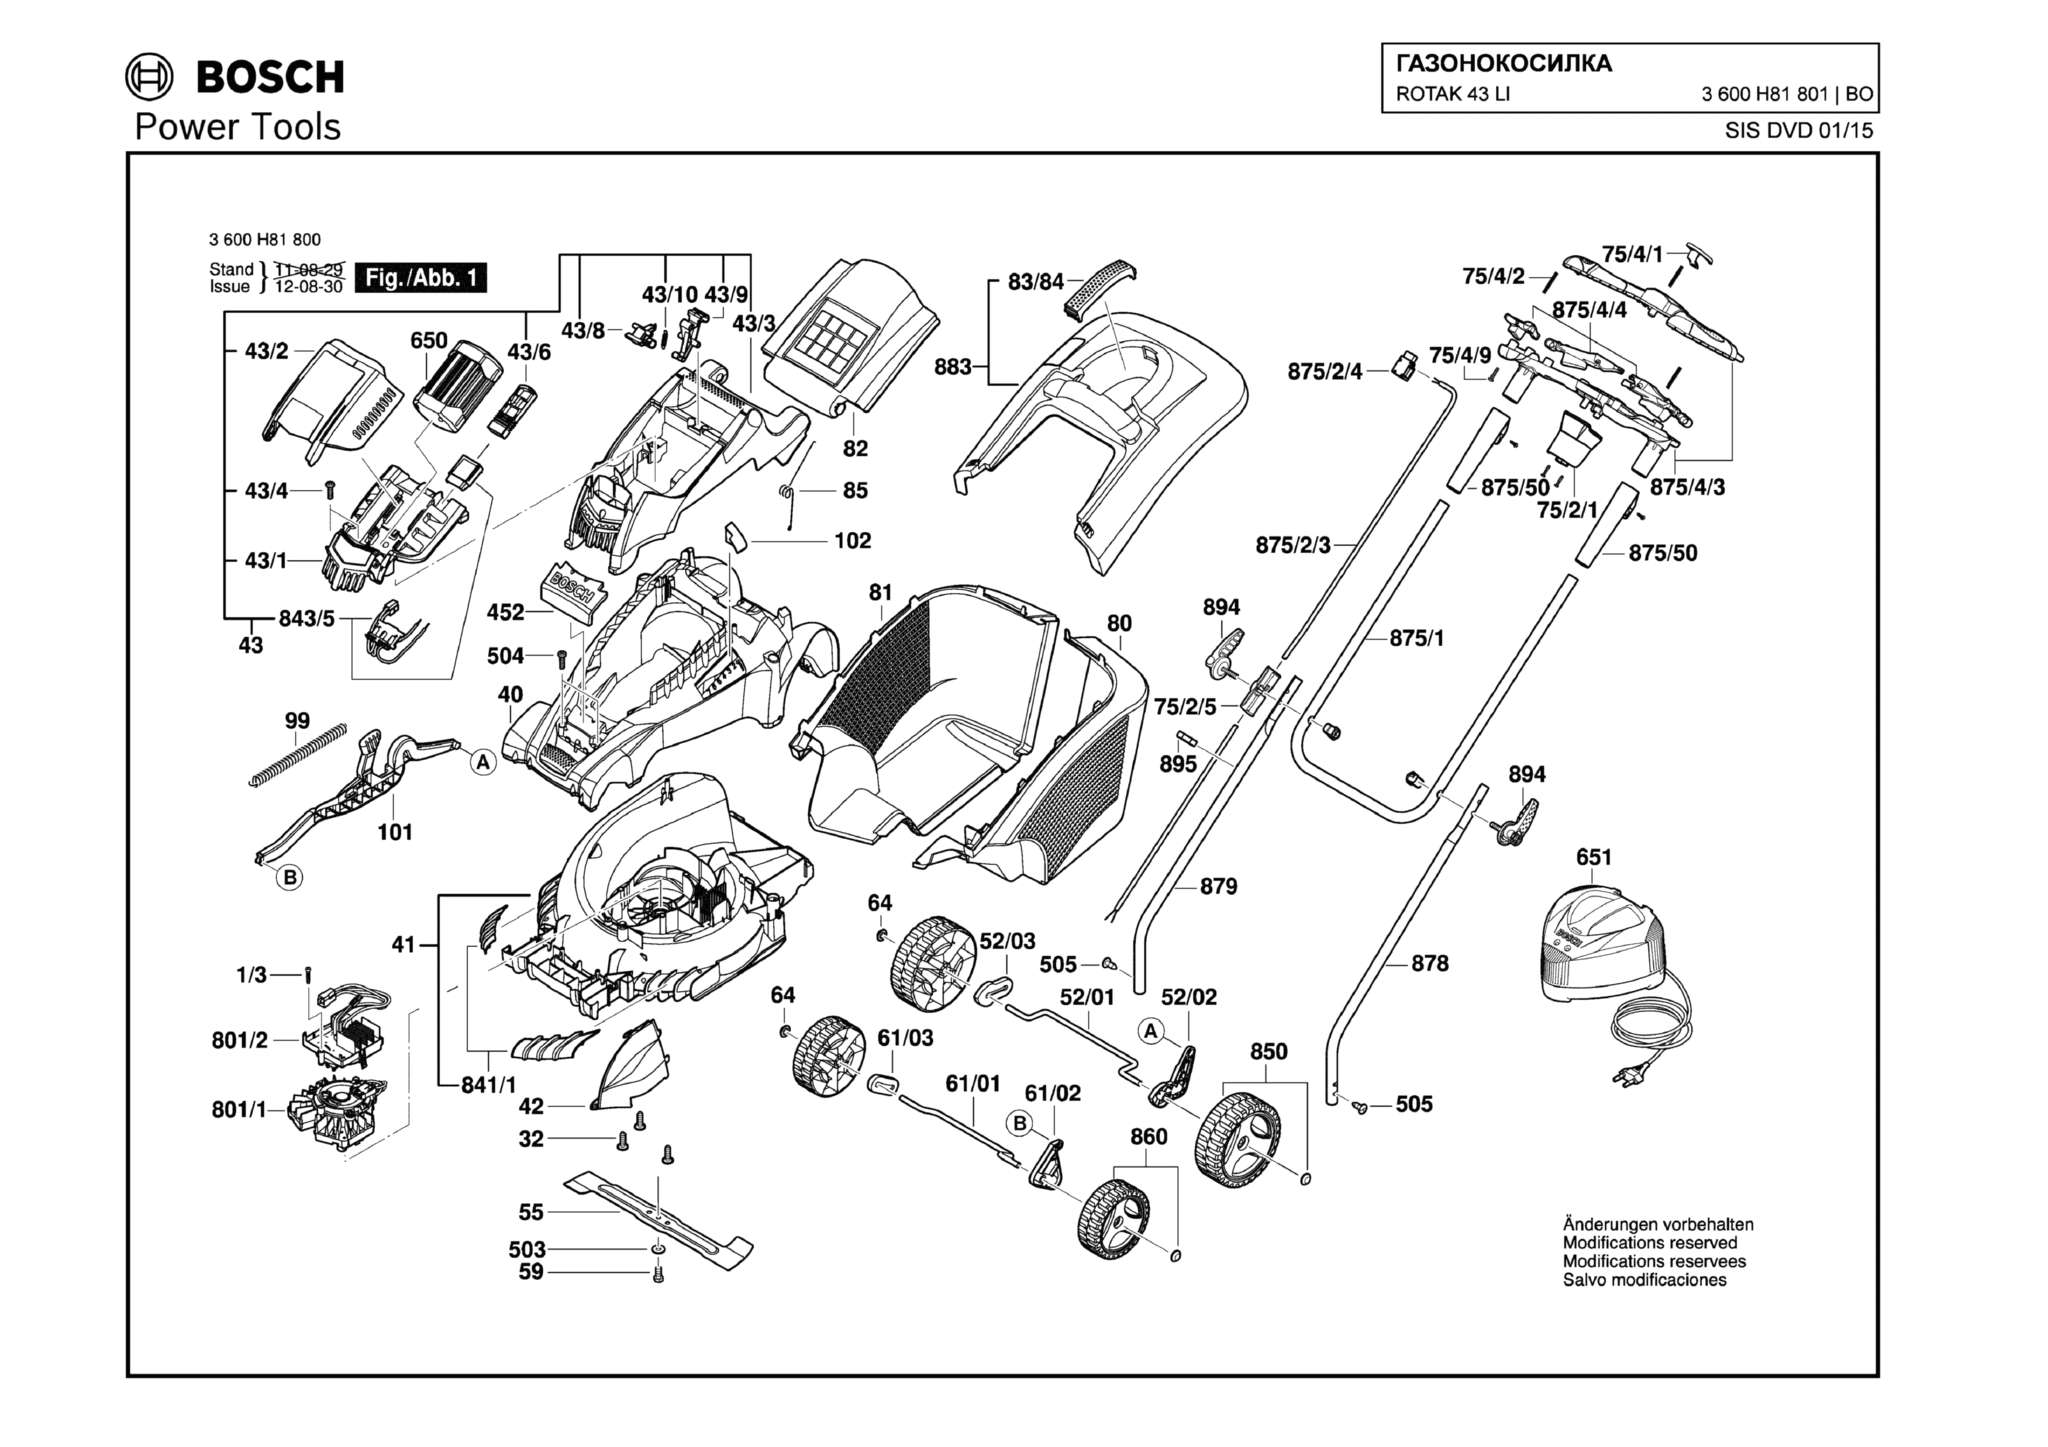 Запчасти, схема и деталировка Bosch ROTAK 43 LI (ТИП 3600HA4500) (ЧАСТЬ 1)